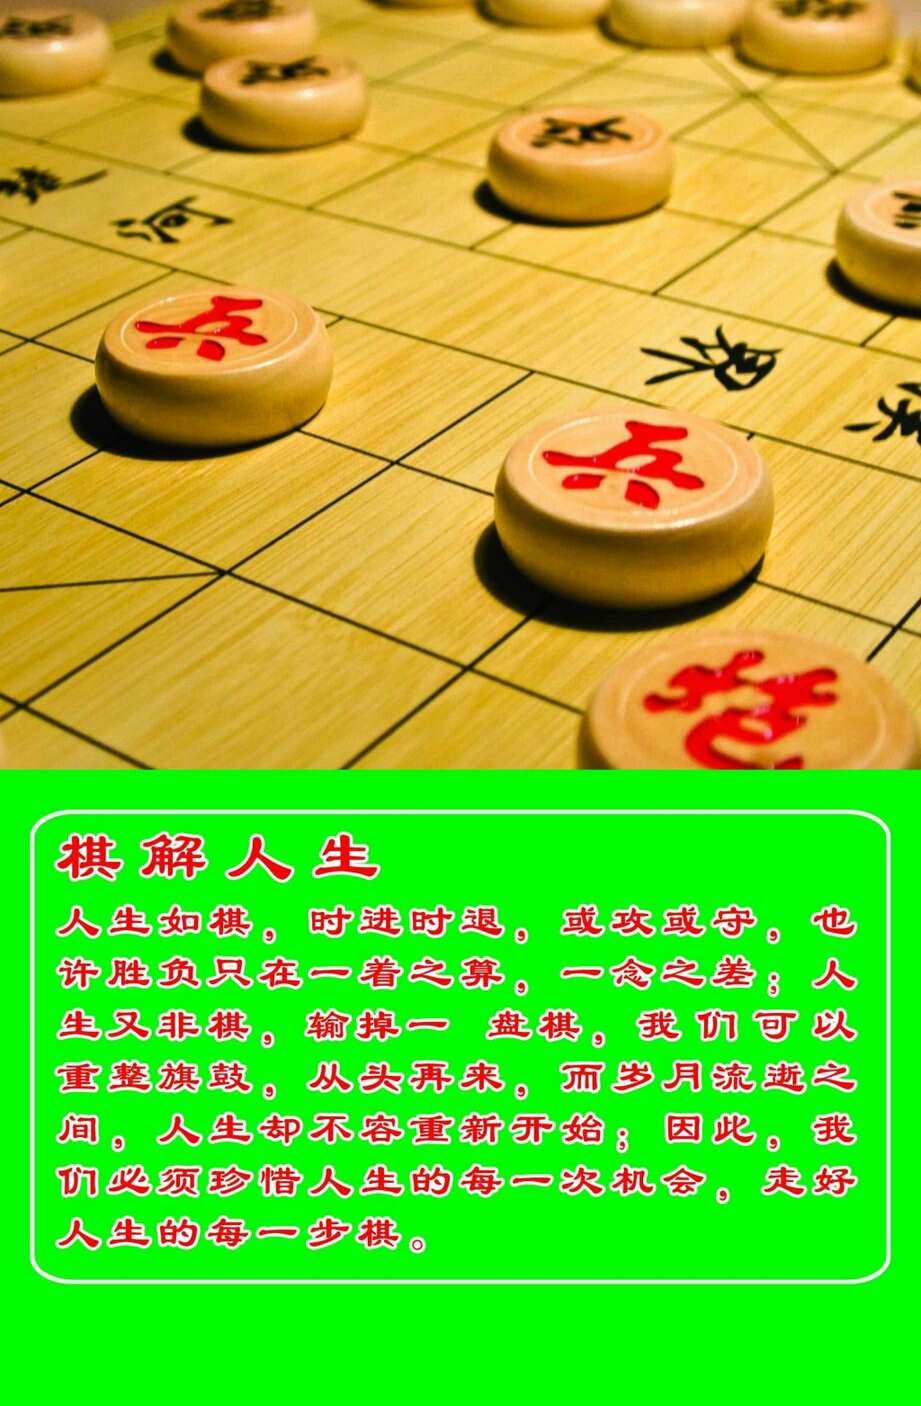 国际象棋app下载_国际象棋apk_下载国际象棋软件